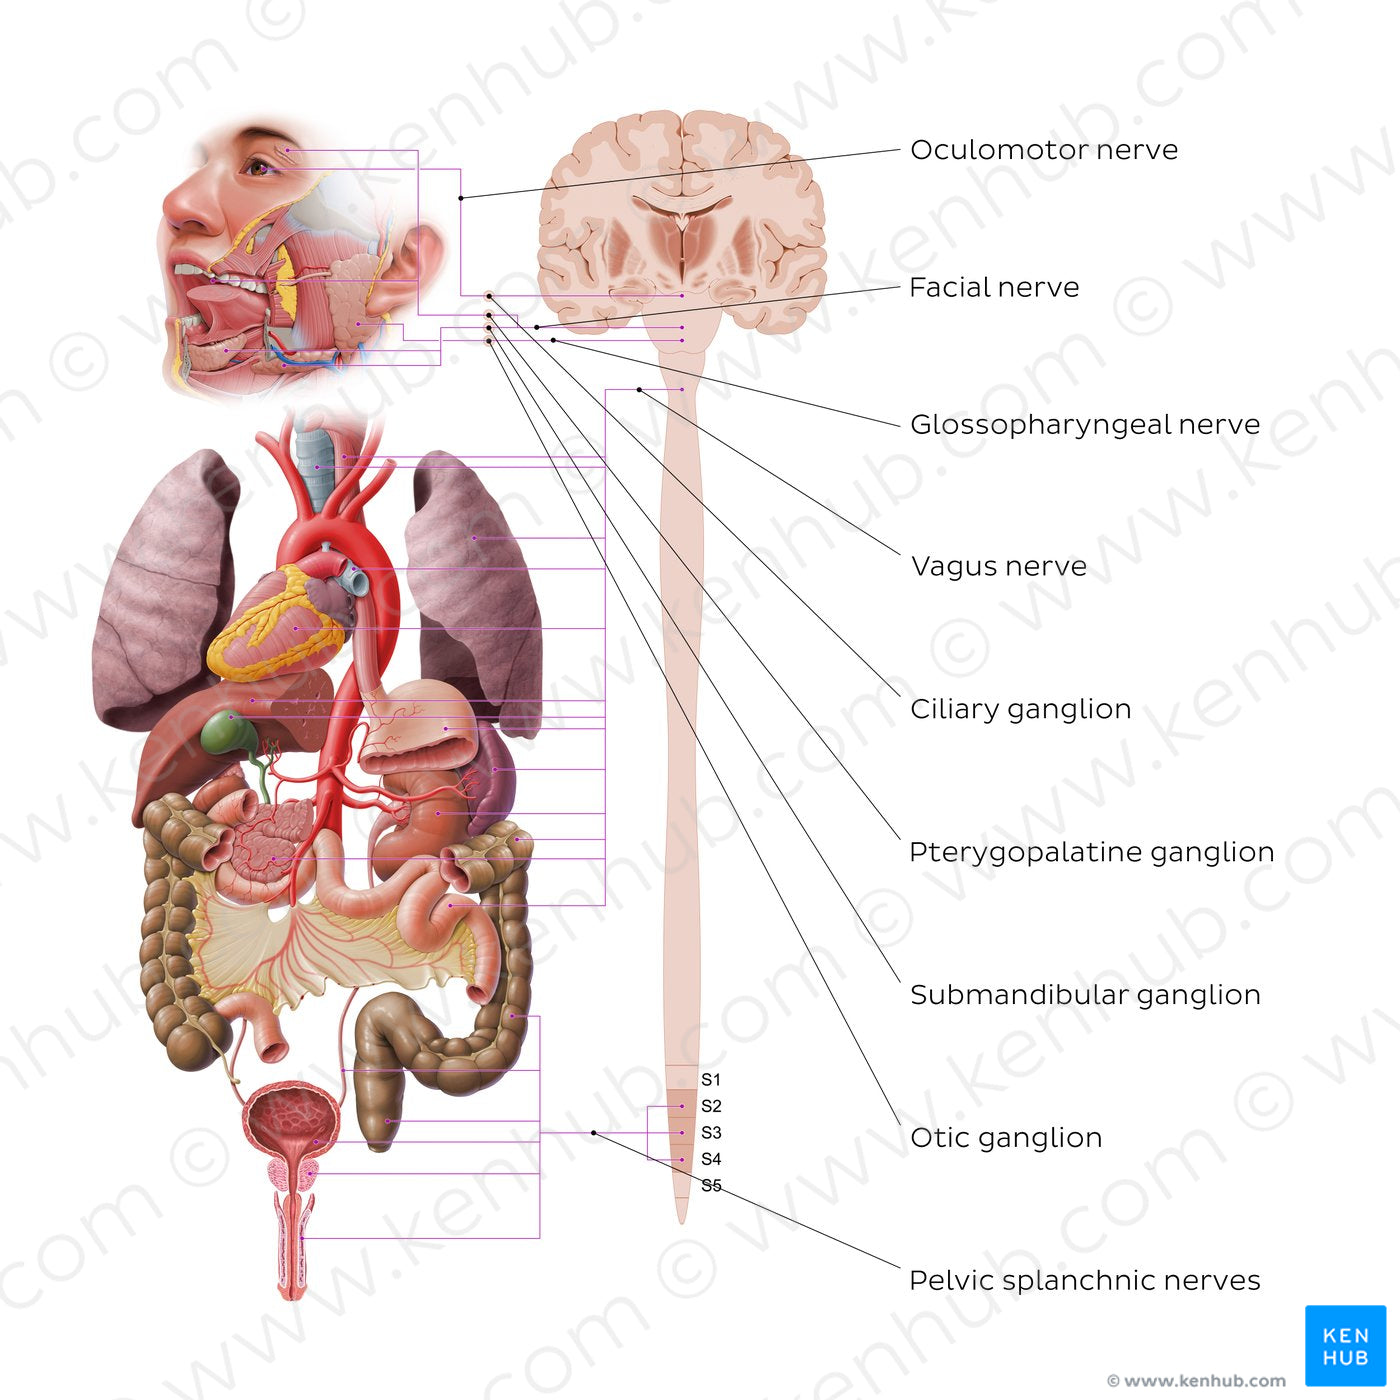 Autonomic nervous system - parasympathetic nervous system (English)